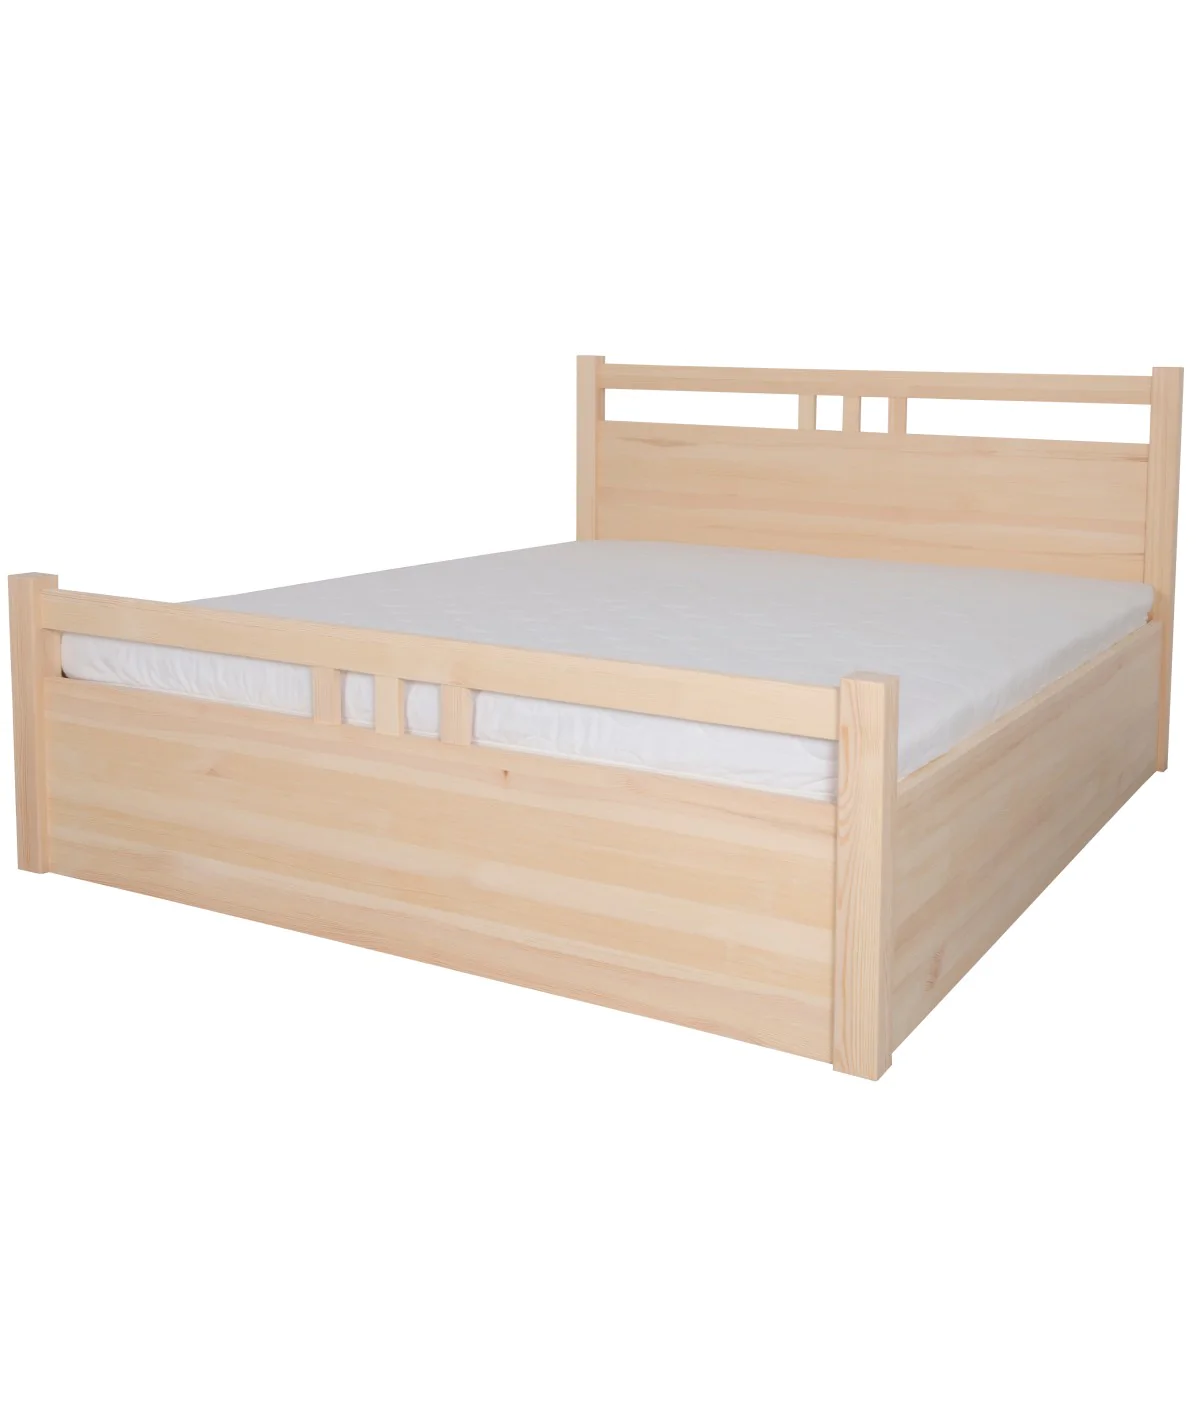 Łóżko bukowe MALACHIT 6 STOLMIS podnoszone na ramie drewnianej